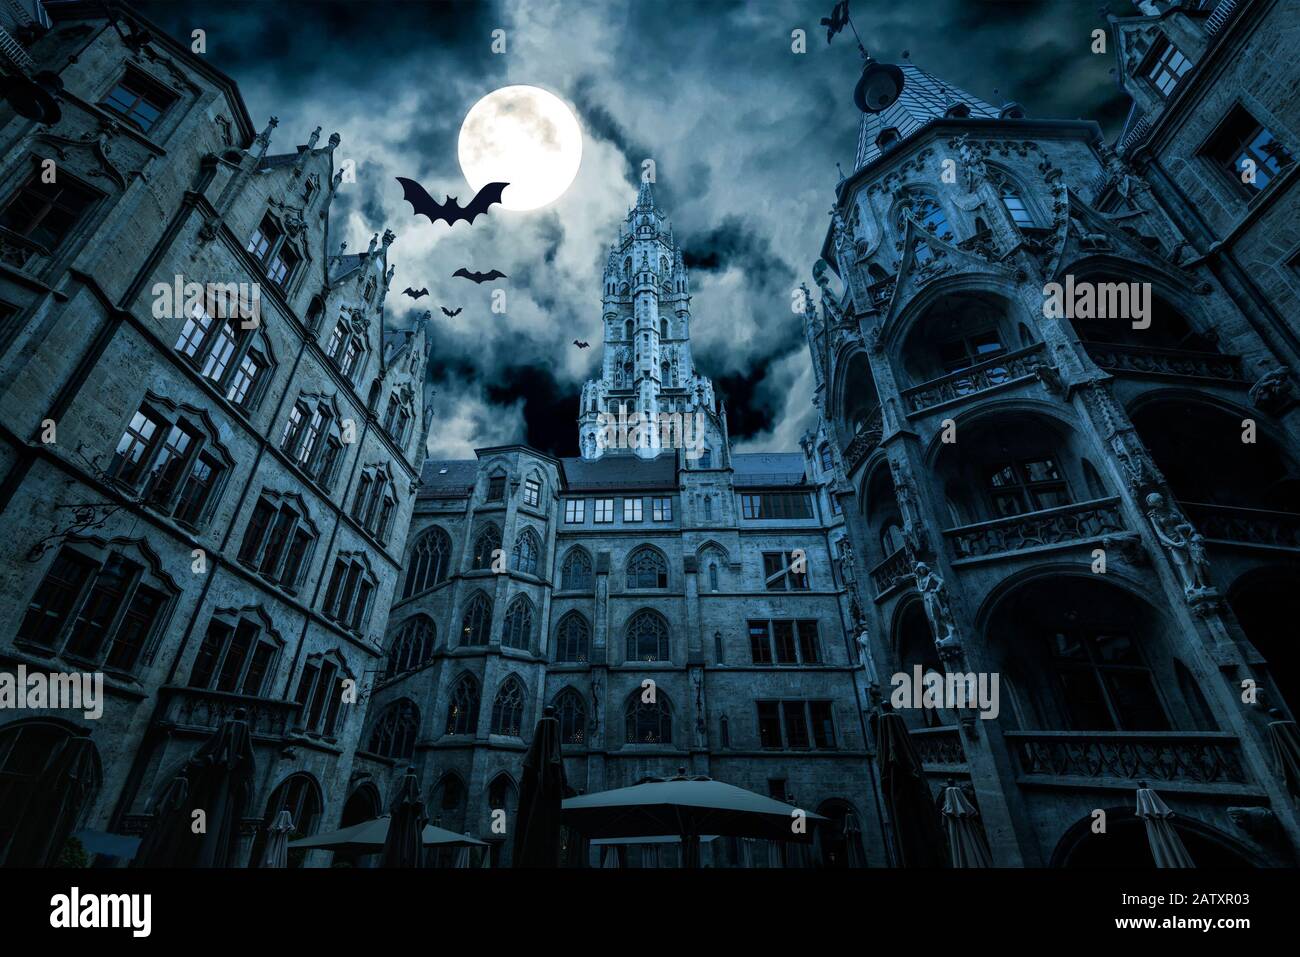 Marienplatz di notte, Monaco, Germania. Creepy mistero vista del municipio gotico scuro con pipistrelli. Vecchio castello spettrale o palazzo in luna piena. Spaventoso buio Foto Stock